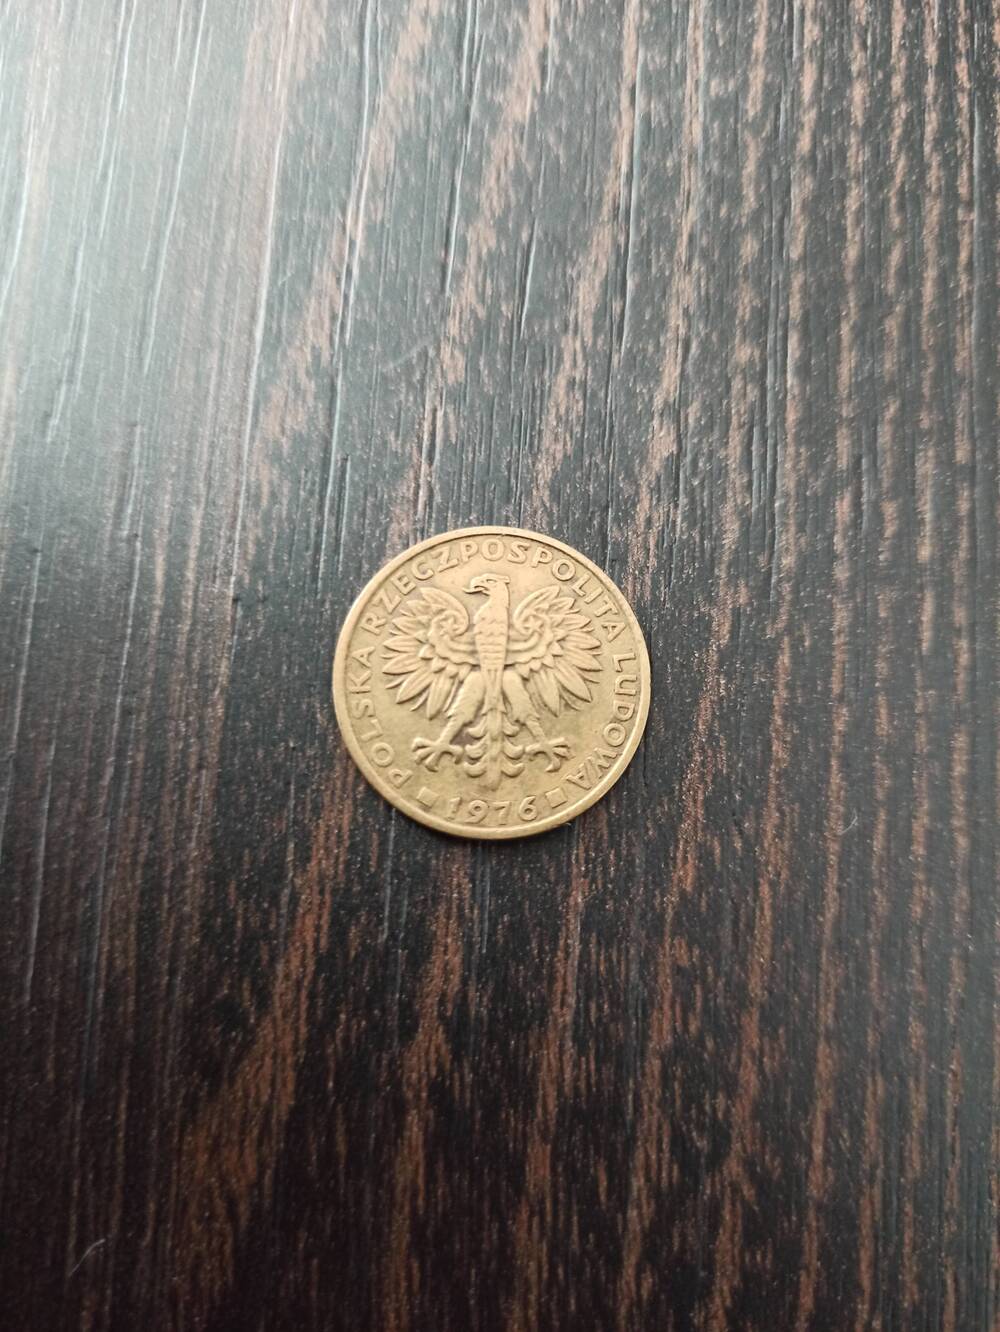 Нумизматика. Монета Польши достоинством 2 злотых 1976 года. Лицевая сторона – «2», по бокам изображены колосья. Гербовая сторона – изображение орла и надпись ПОЛЬСКА ЛЮДОВА 1976.